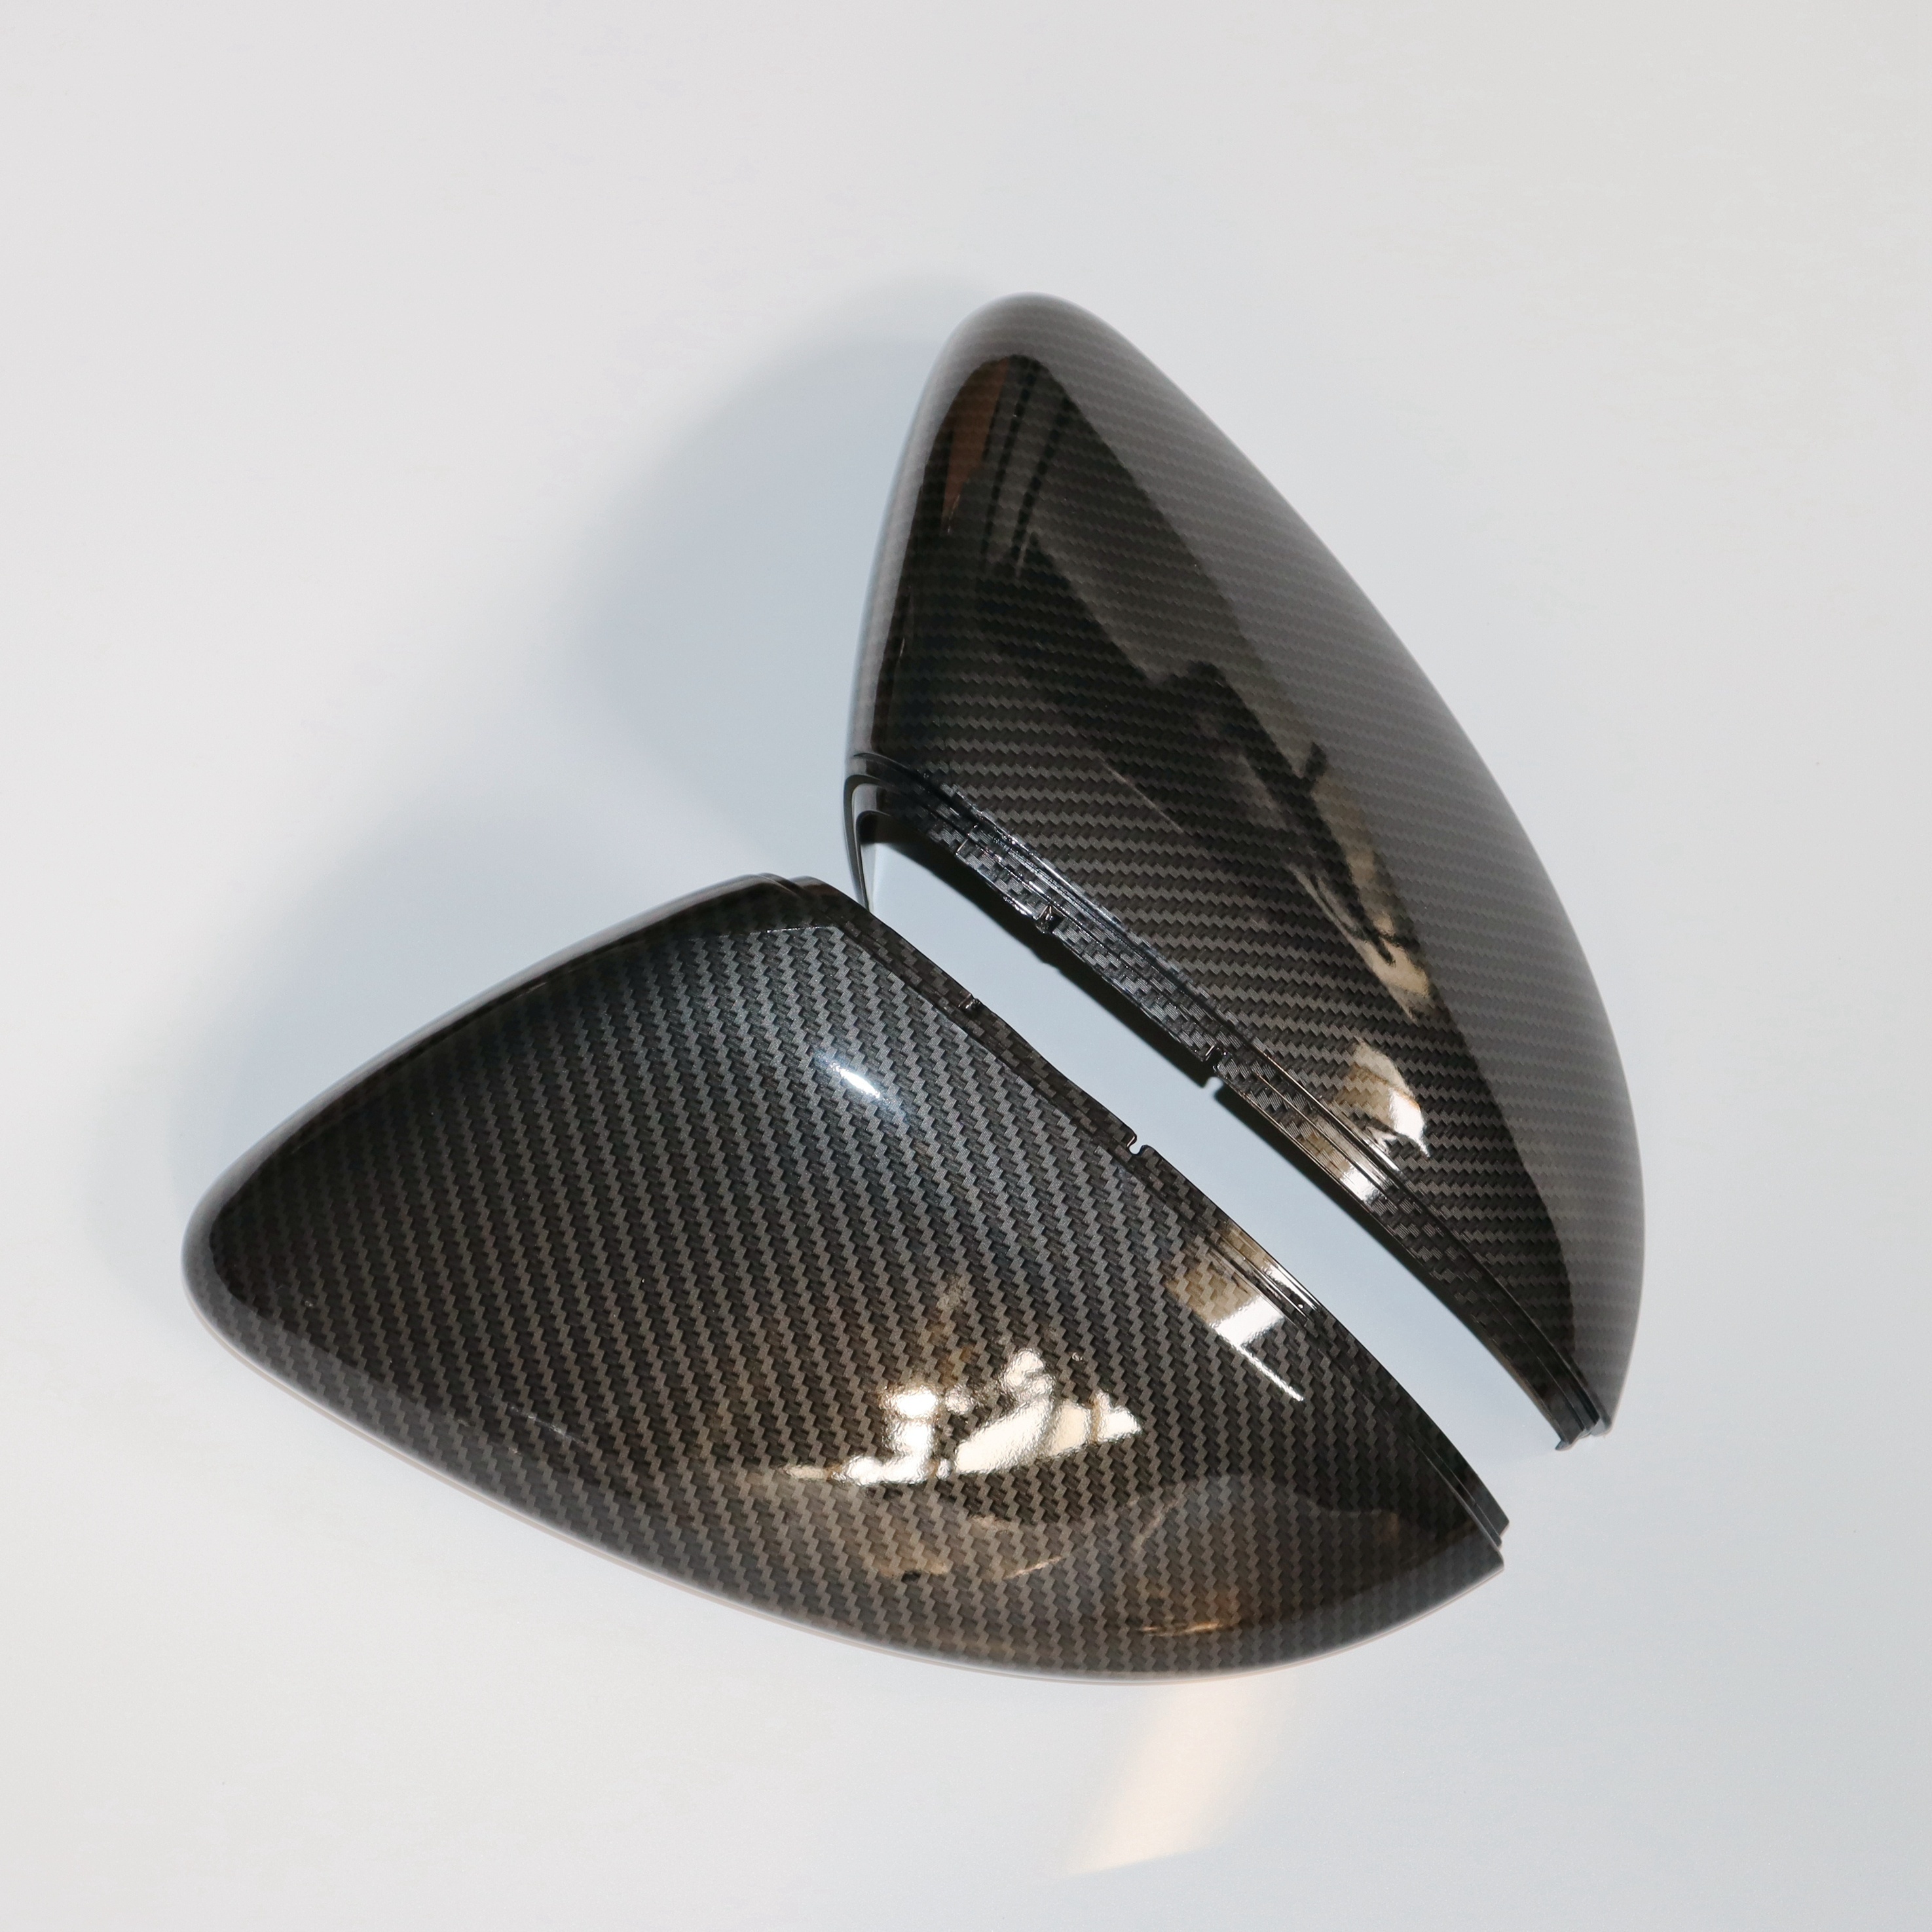 Coques de rétroviseurs noir brillant Golf 7 - Accessoires Volkswagen